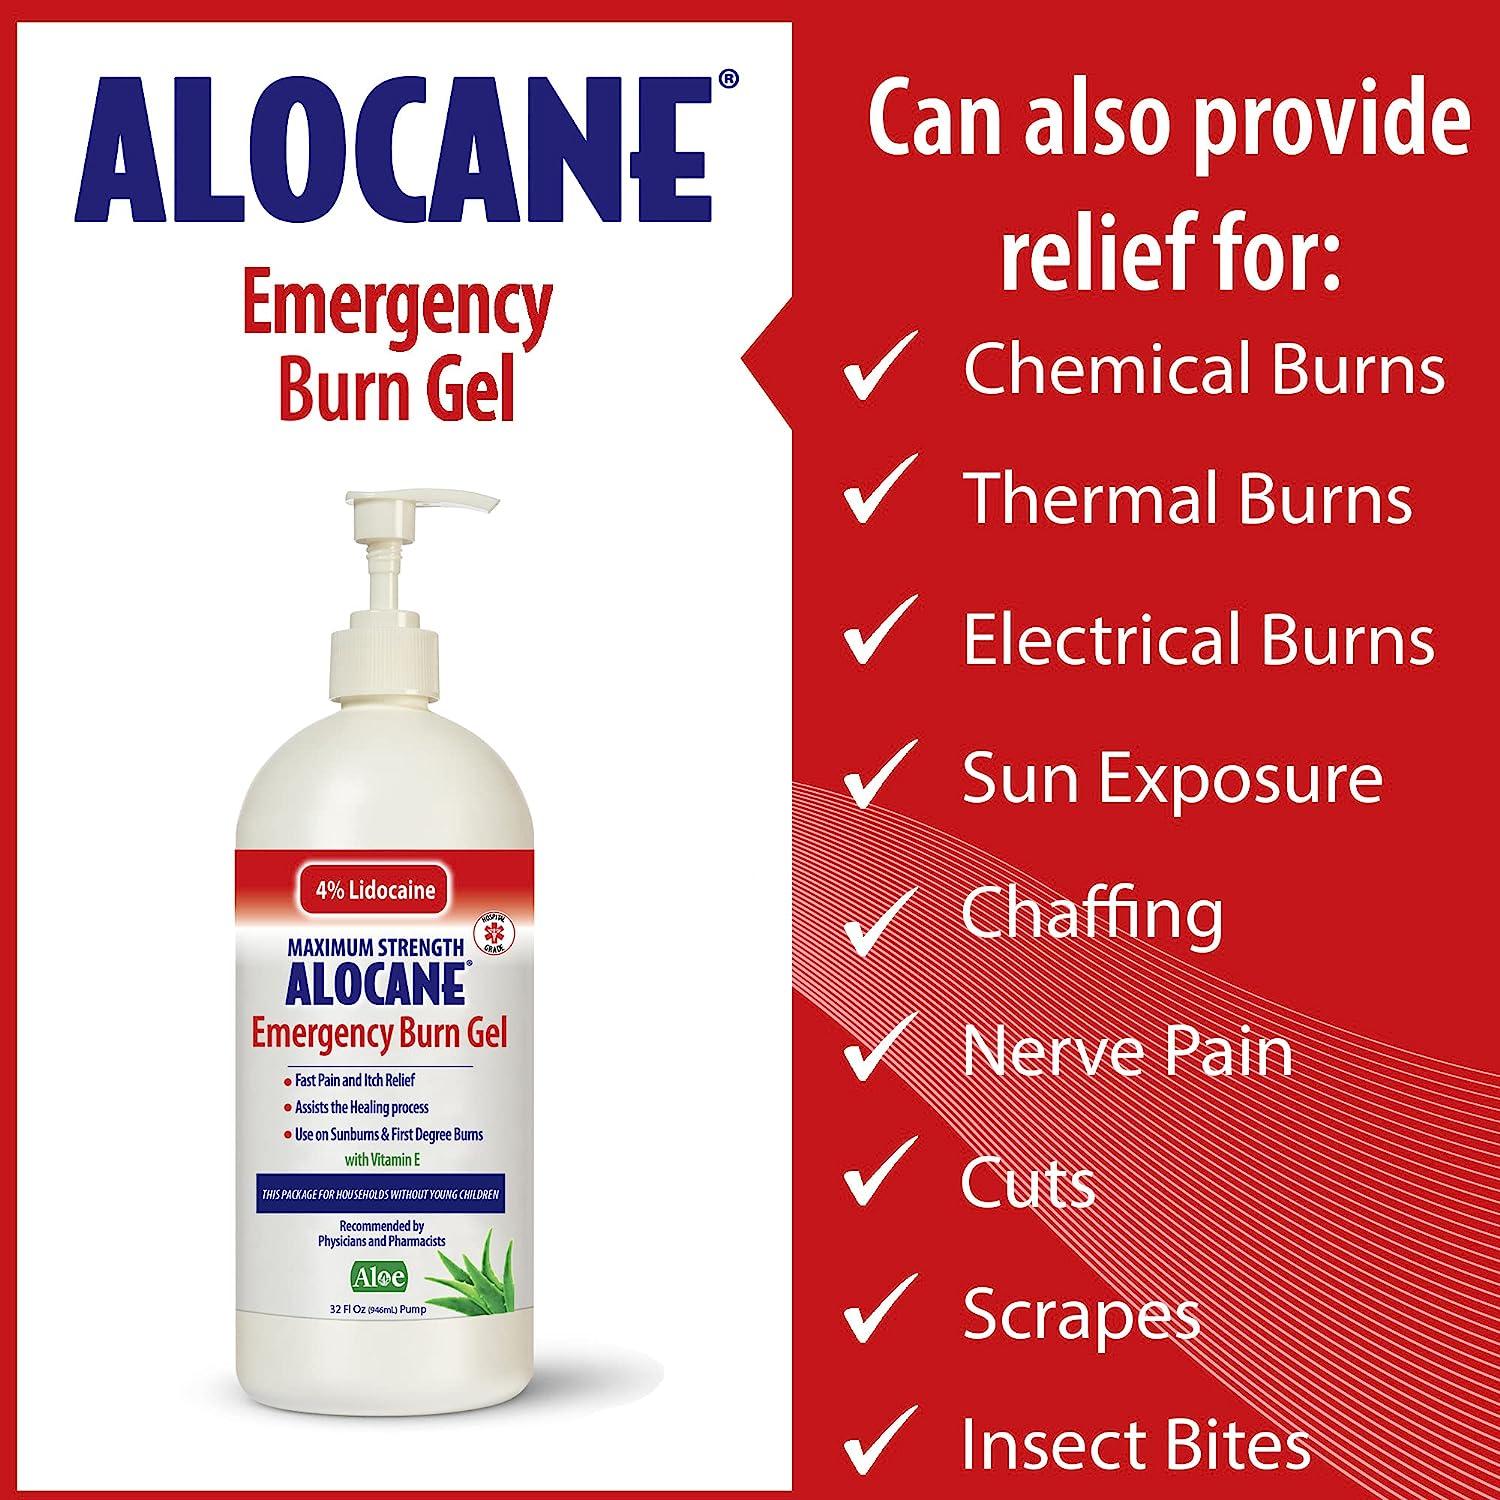  ALOCANE® Emergency Burn Gel Maximum Strength 4